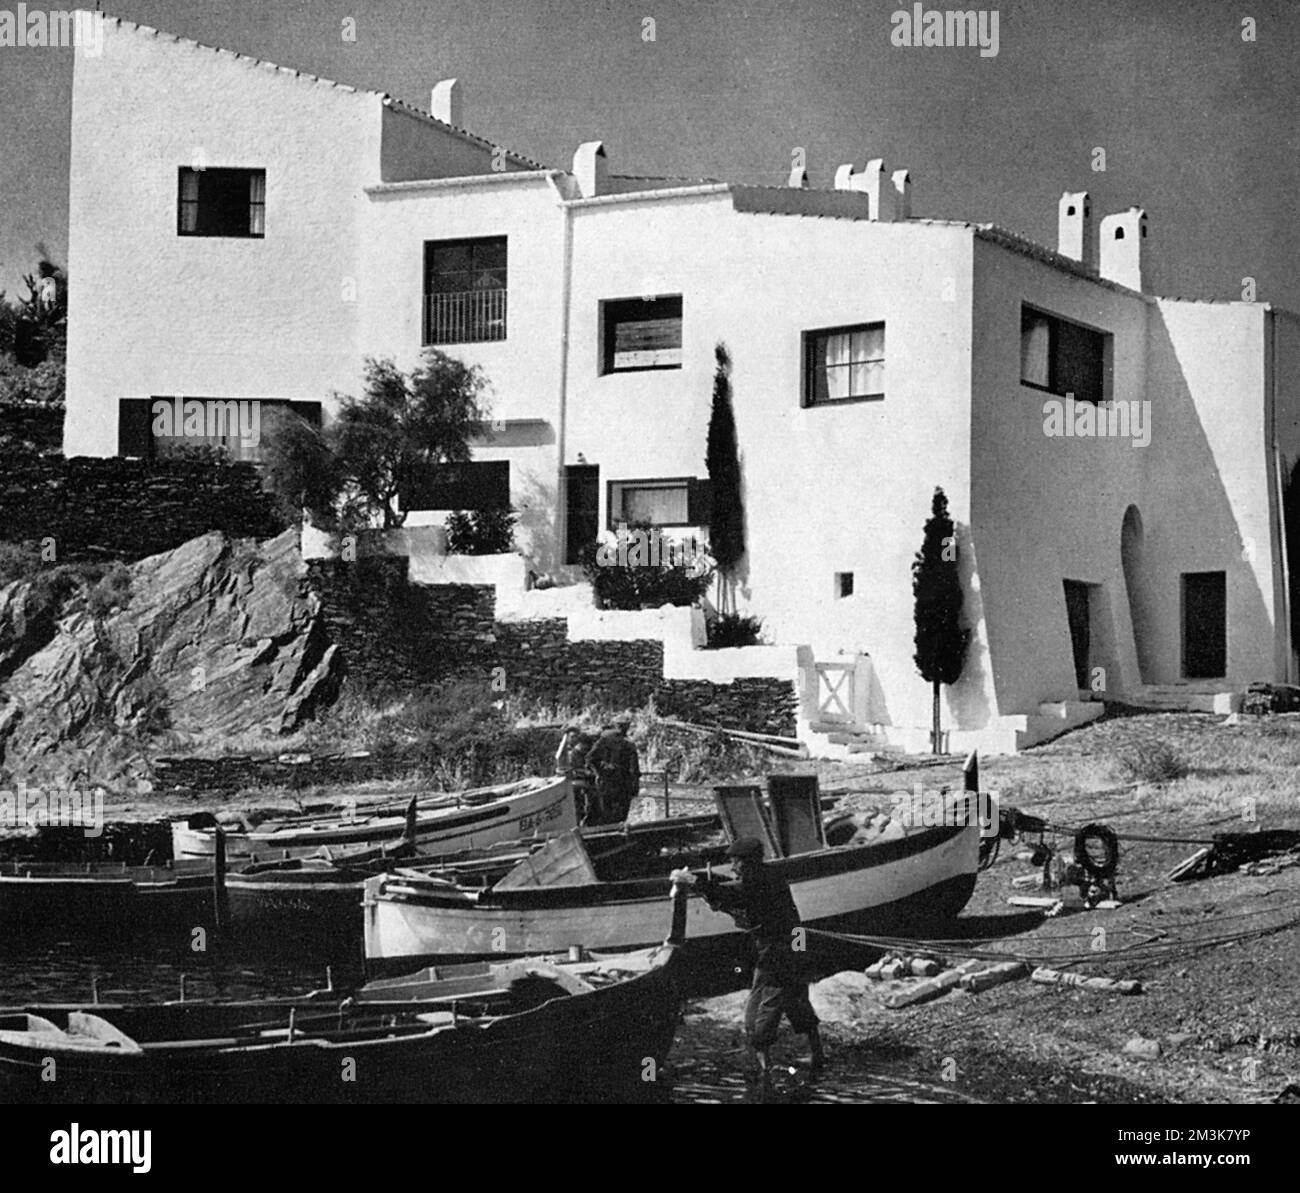 Dies ist das Haus des surrealistischen Künstlers Salvador Dali in Port Lligat, am Fuße der spanischen Pyrenäen am Mittelmeer. Es wurde aus vier Fischerhäusern umgebaut. 1997 wurde das Haus zu einem Museum. Stockfoto